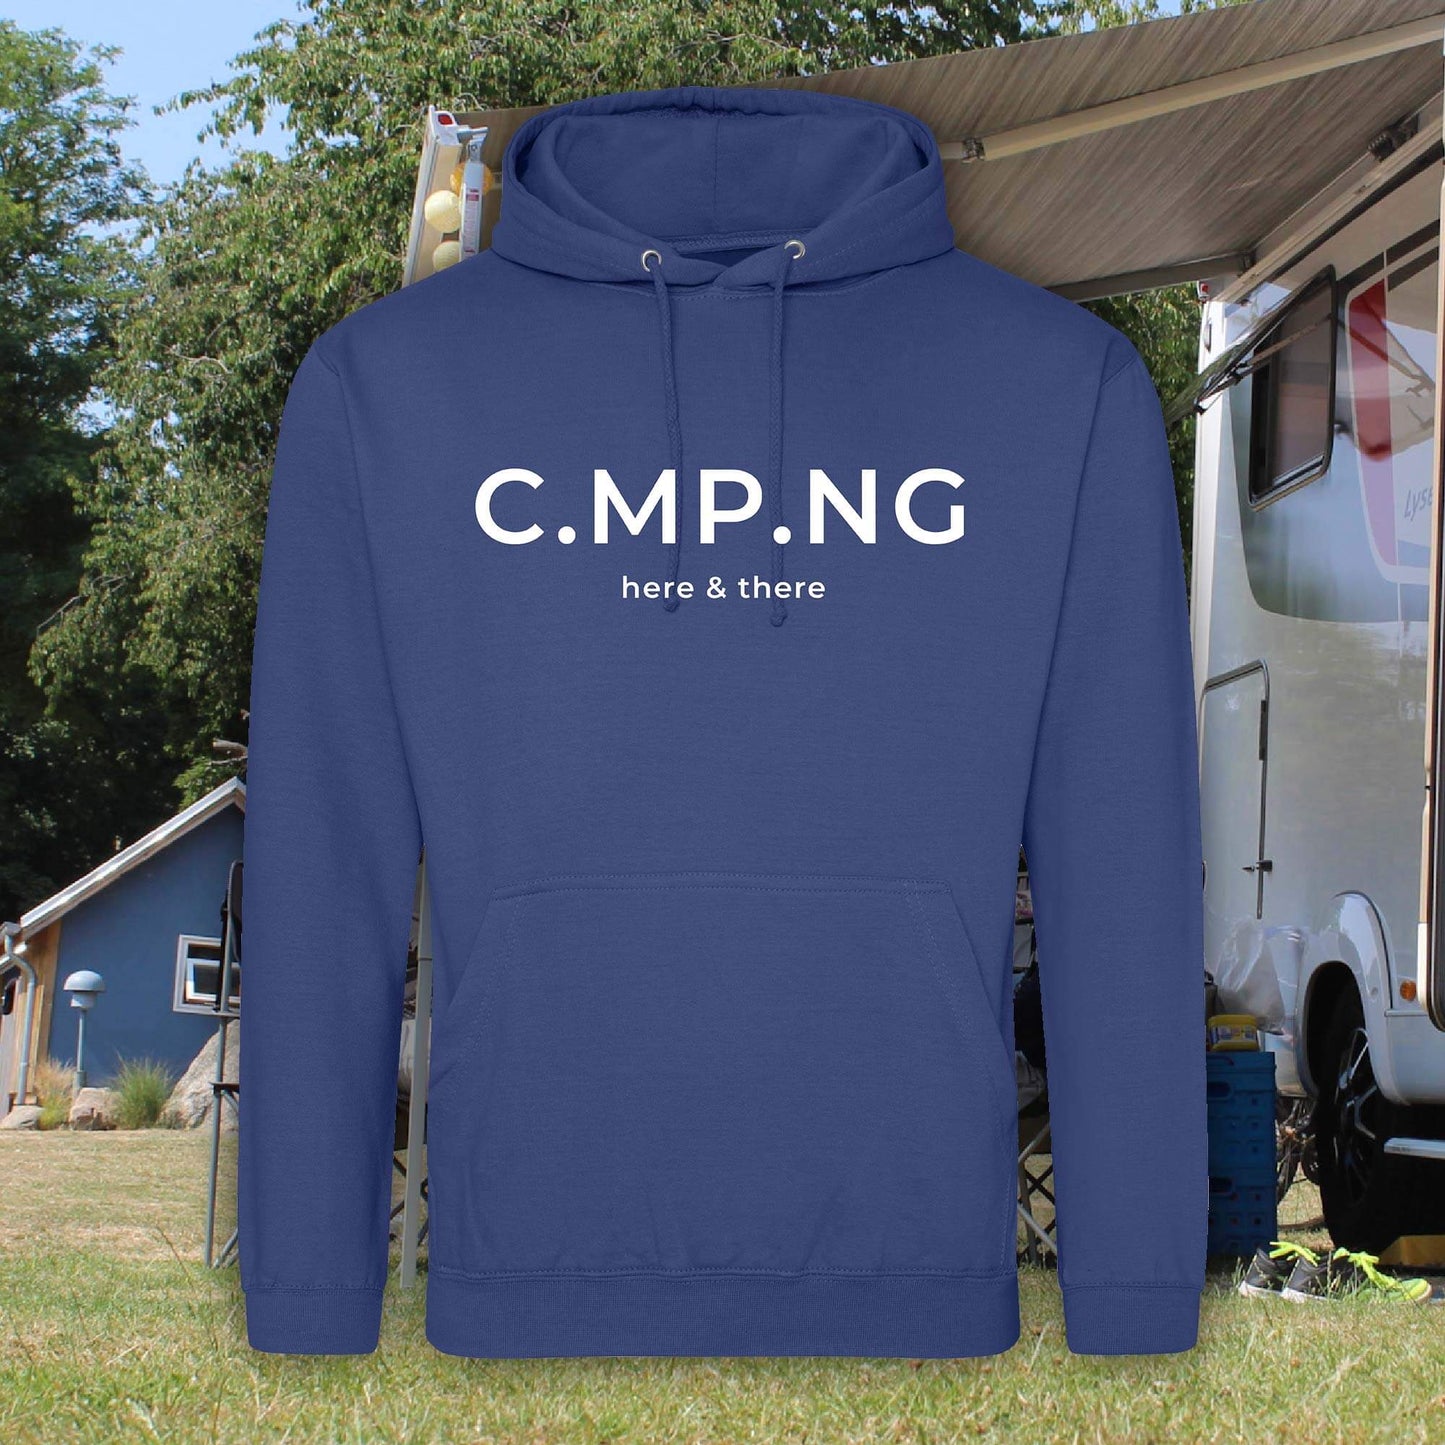 Camping-Hoodie dunkelblau mit weißem Aufdruck CMPNG auf der Brust. Darunter steht ebenfalls in weiß here & there.